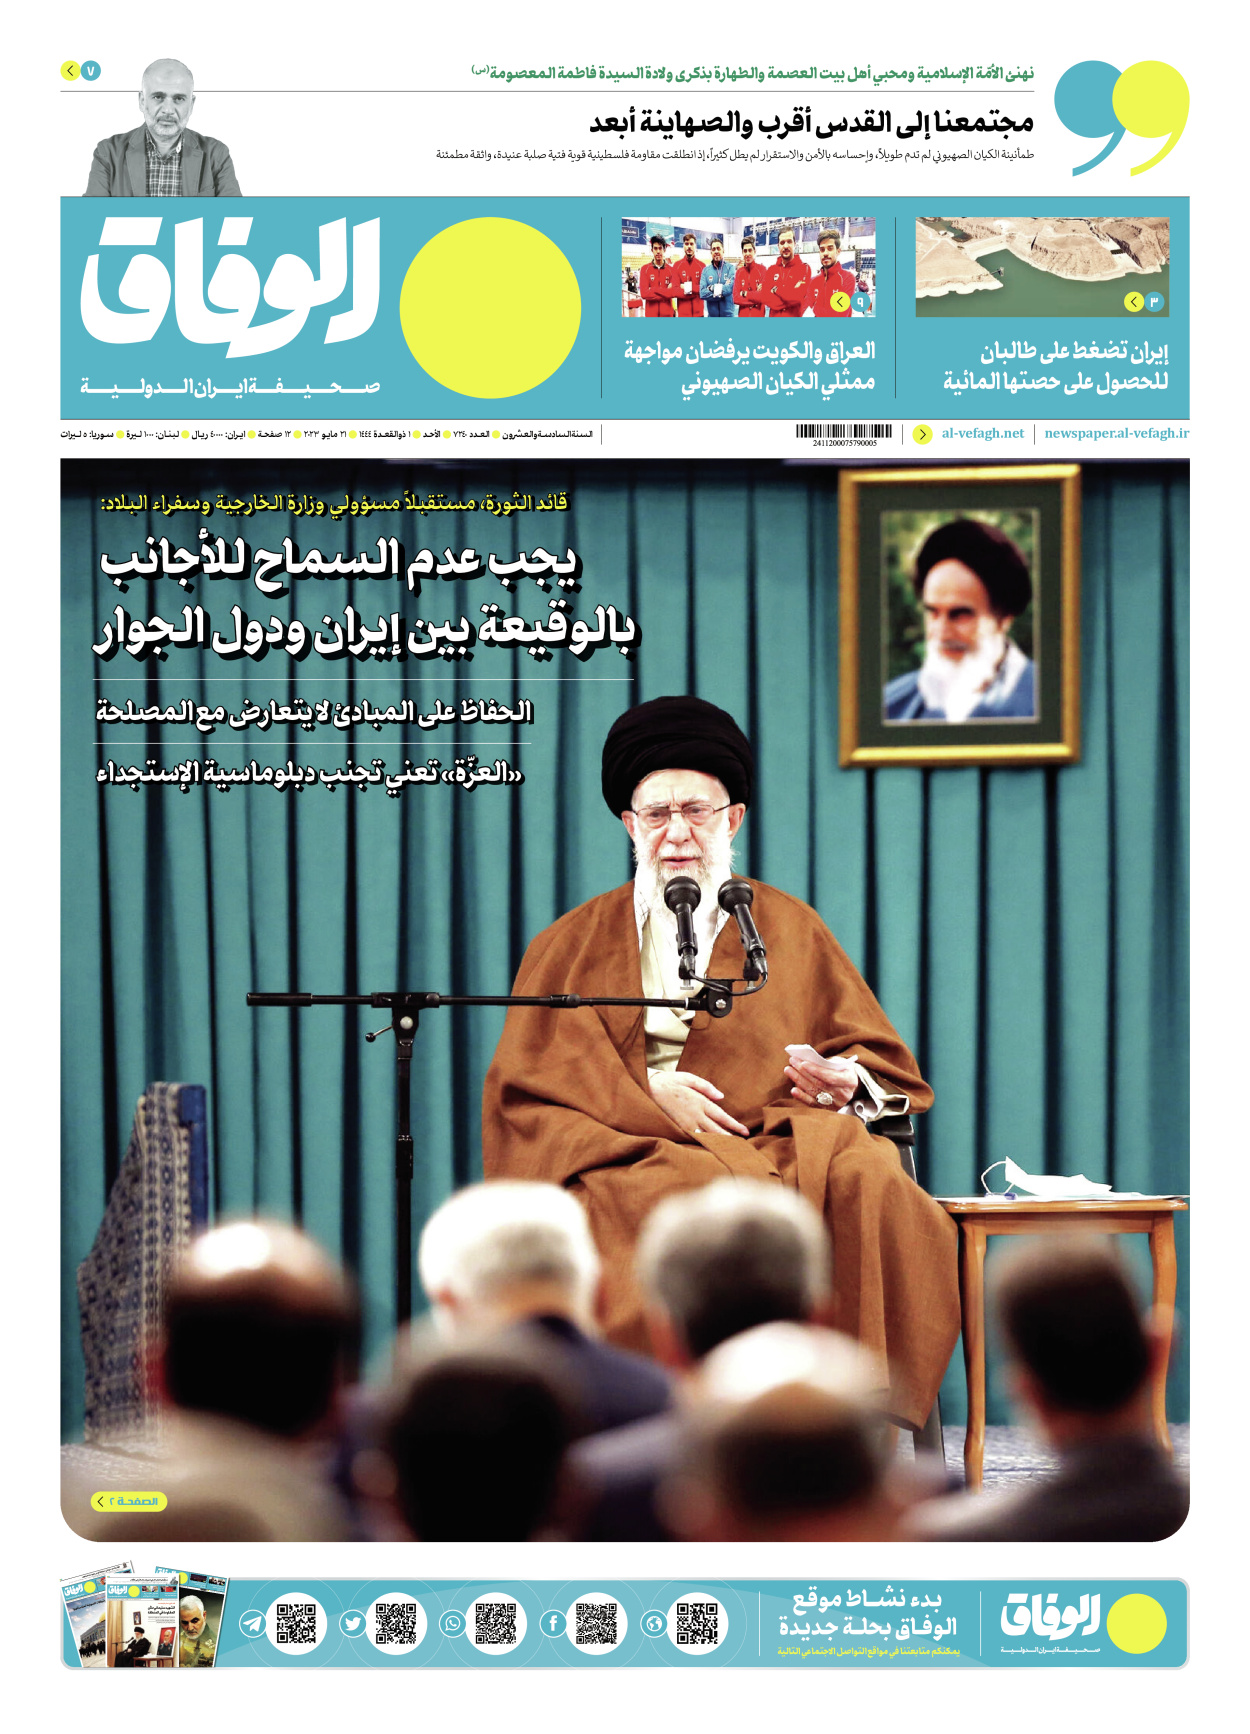 صحیفة ایران الدولیة الوفاق - العدد سبعة آلاف ومائتان وأربعون - ٢١ مايو ٢٠٢٣ - الصفحة ۱